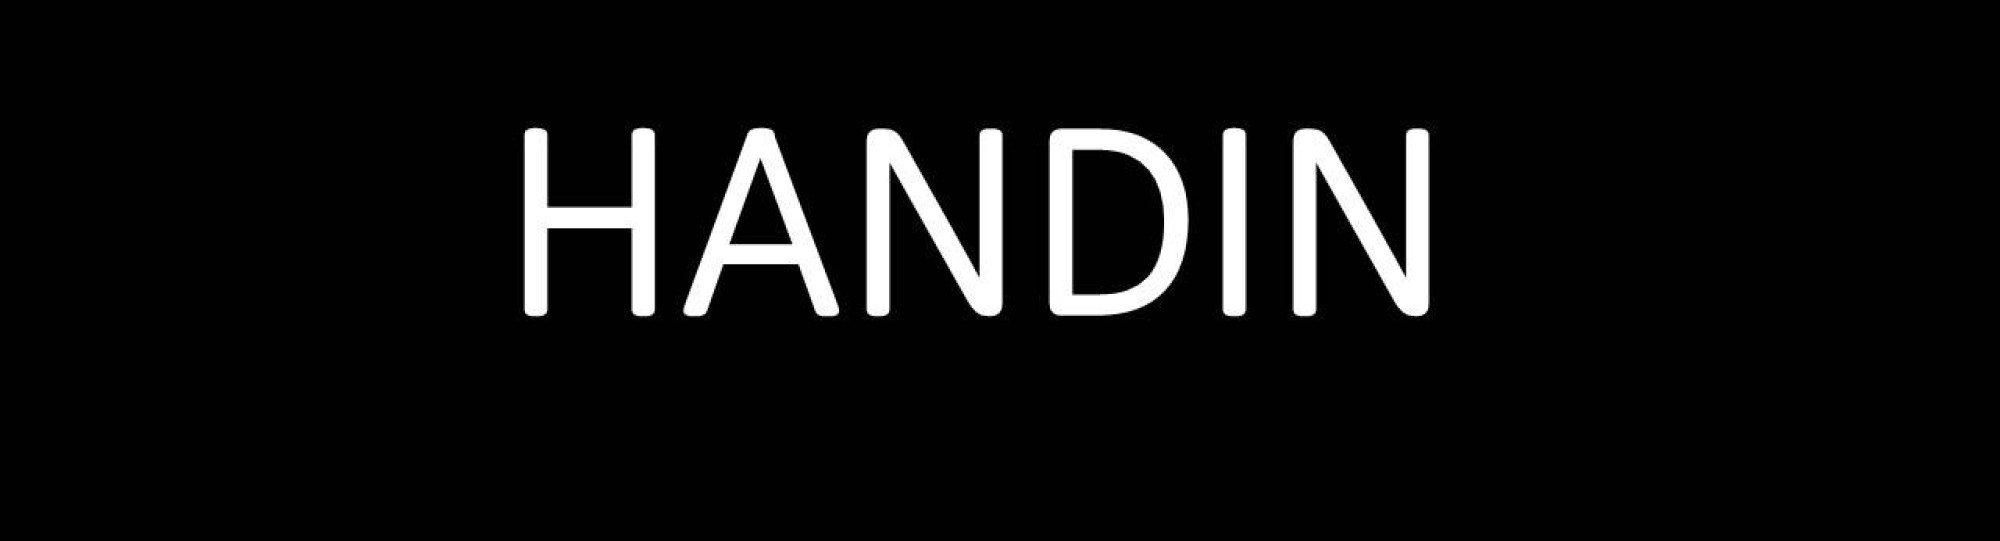 handin logo 